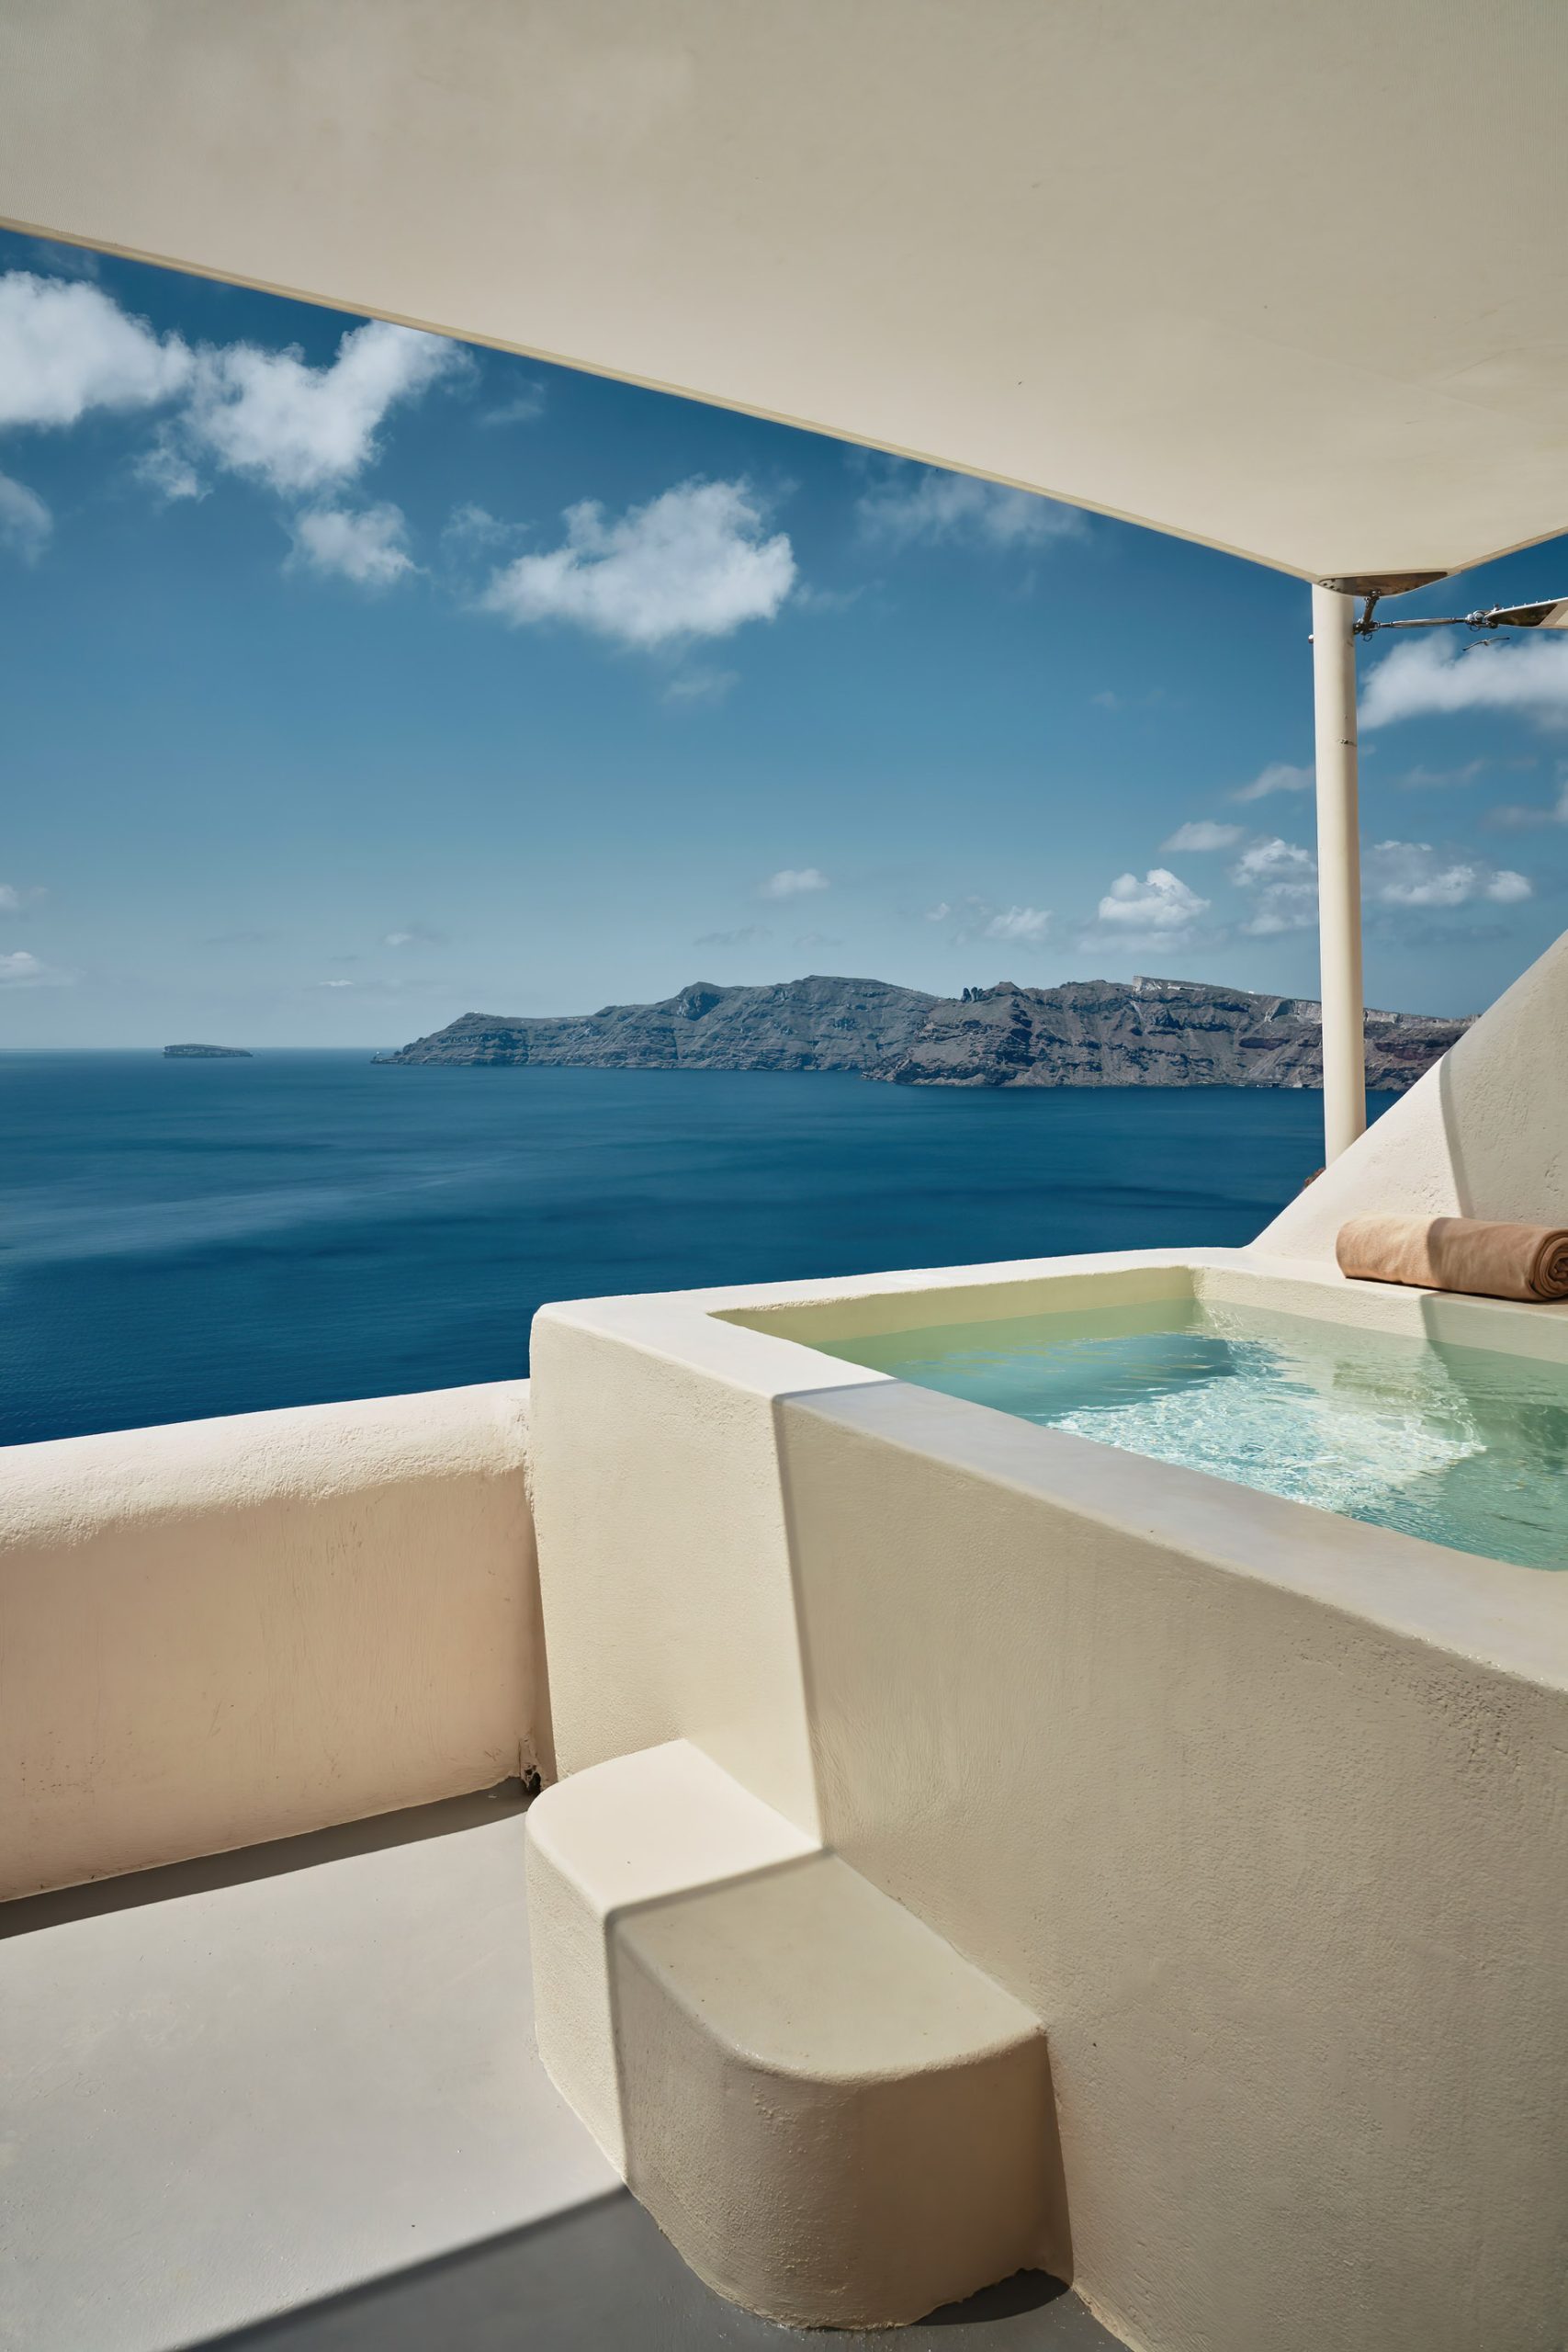 Mystique Hotel Santorini – Oia, Santorini Island, Greece – Spiritual Suite Pool Deck